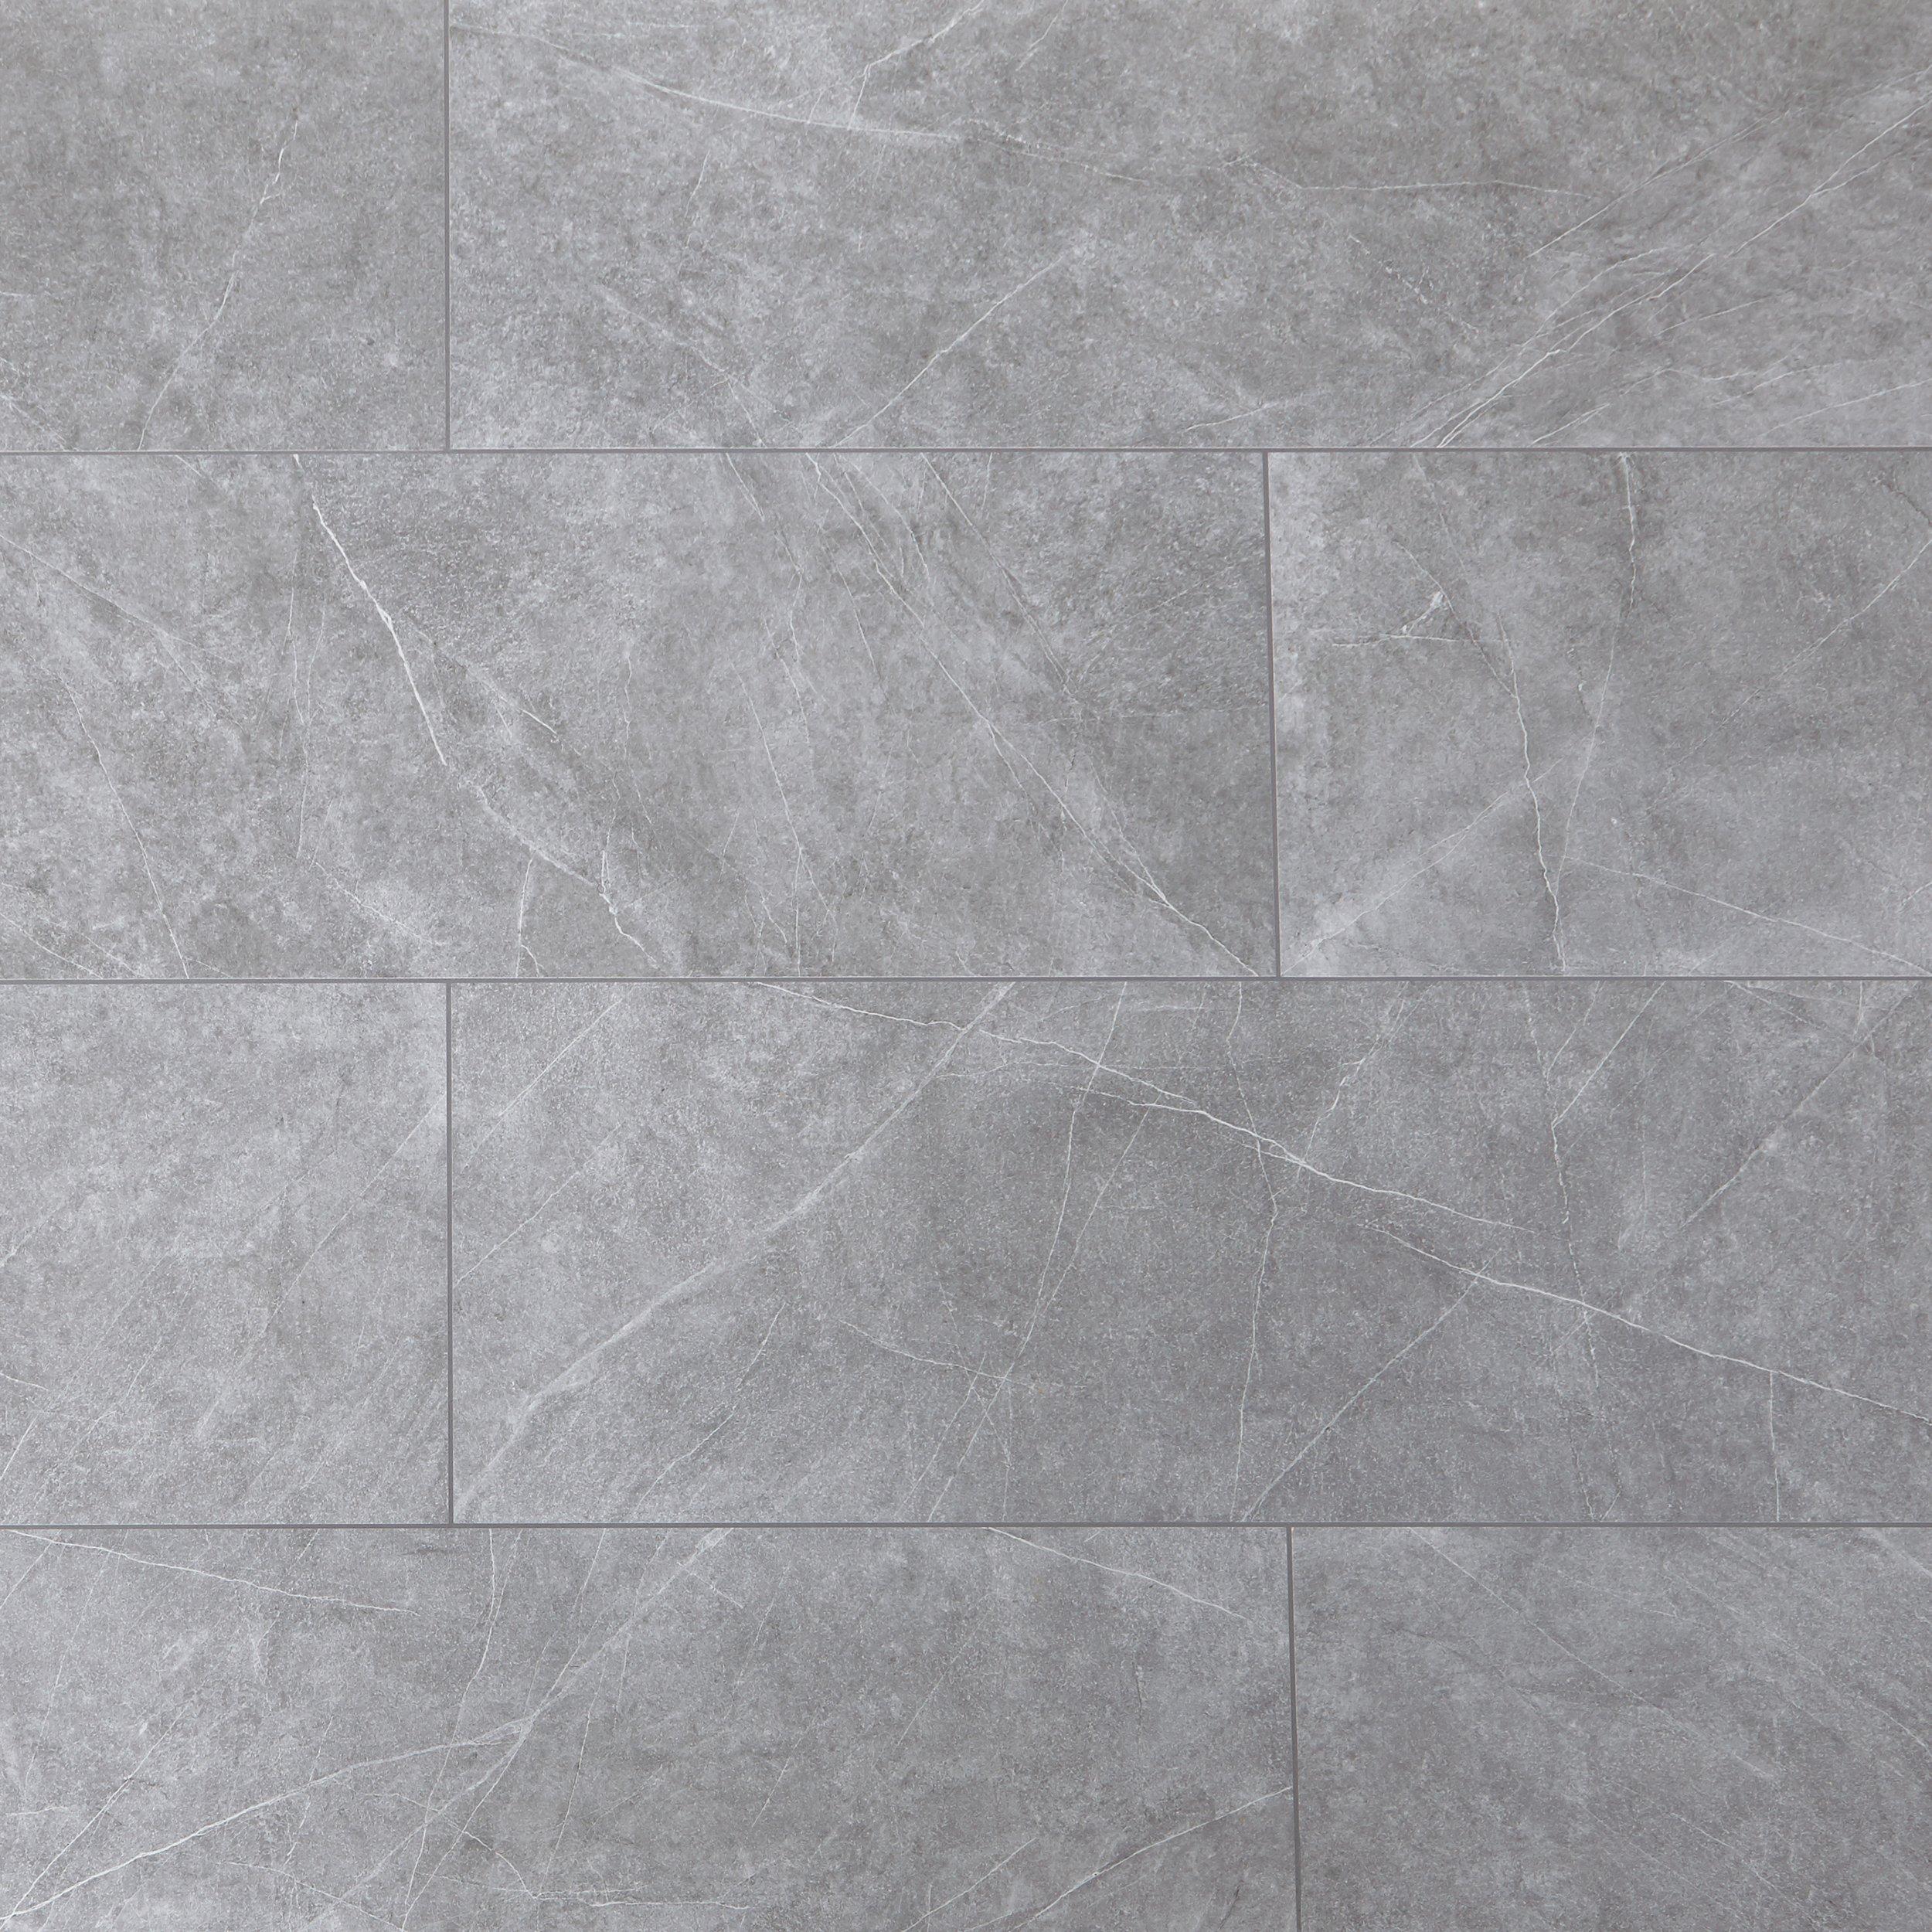 Regency Gray Porcelain Tile Floor And, Gray Patterned Floor Tile